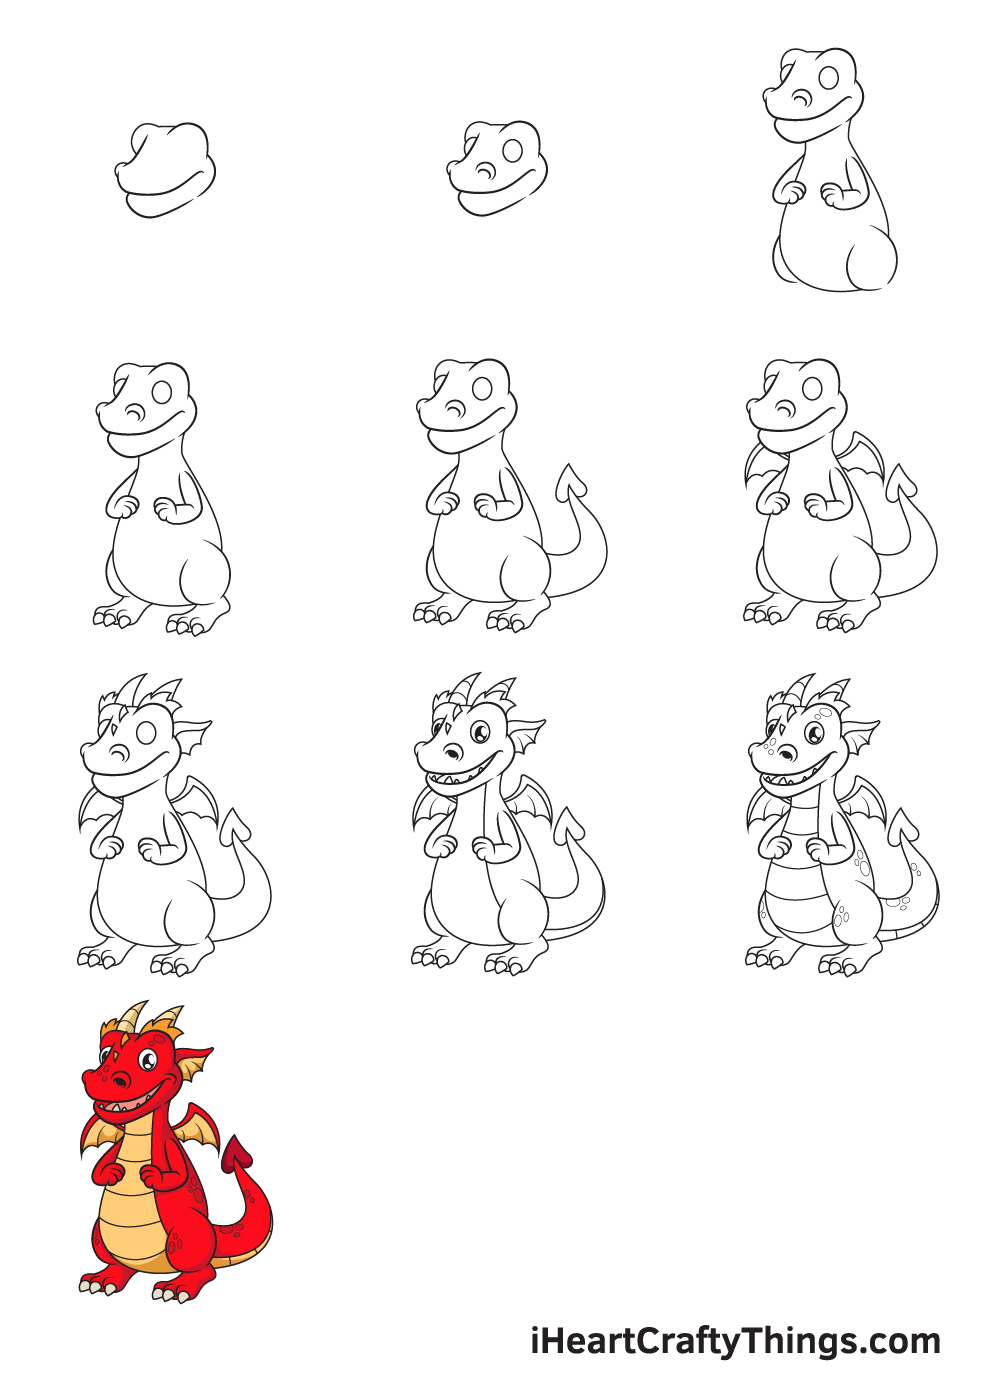 Drawing Dragon in 10 Easy Steps - Hướng dẫn cách vẽ con rồng đơn giản với 9 bước cơ bản cho bé tô màu